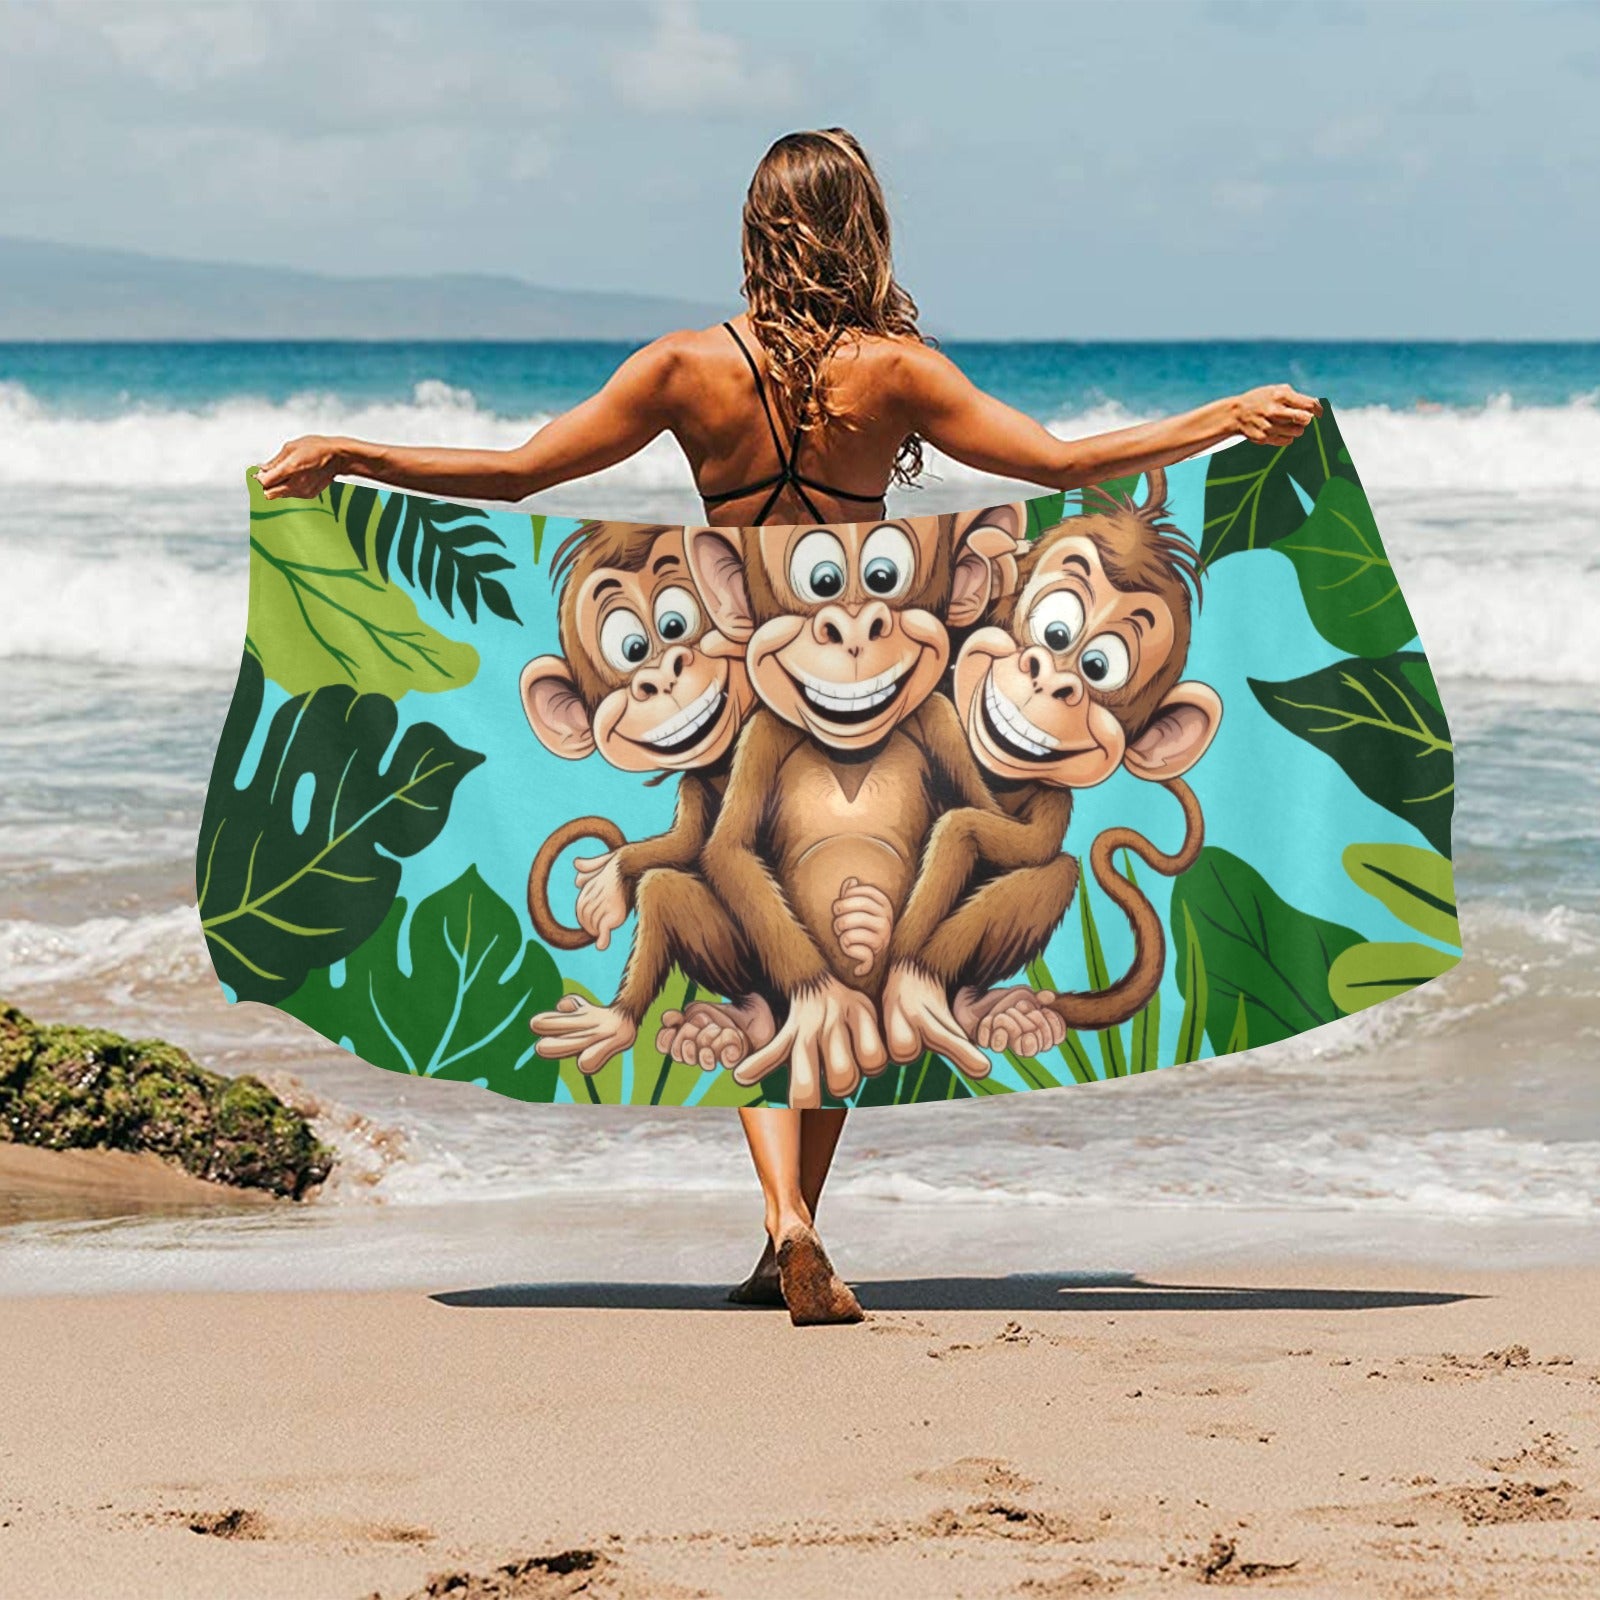 Three Monkeys Beach Towel 31.5"x 71" Inkedjoy